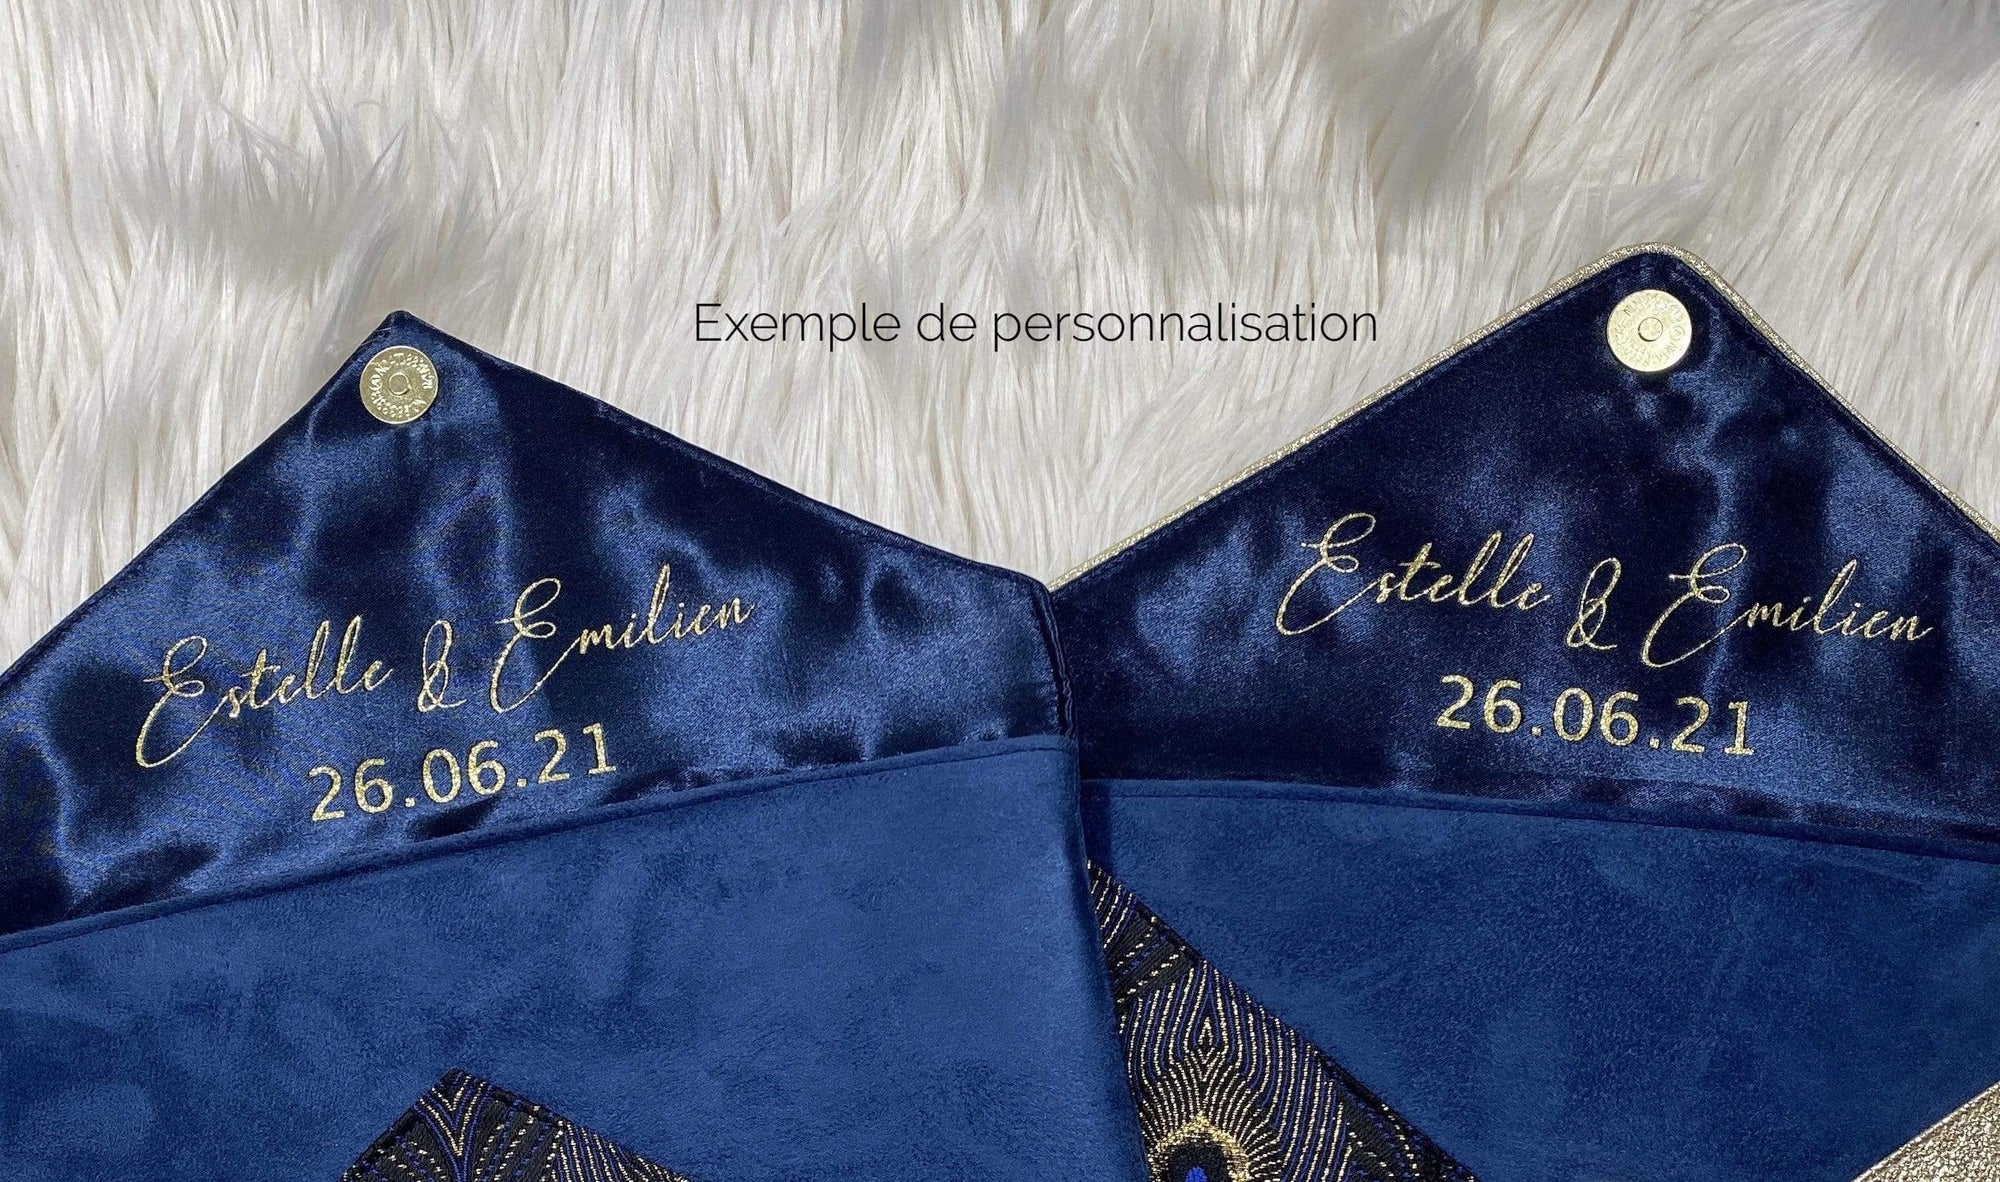 Fil des toiles Pochette Sac pochette bleu marine et jacquard bleu nuit queue de paon avec chaîne dorée